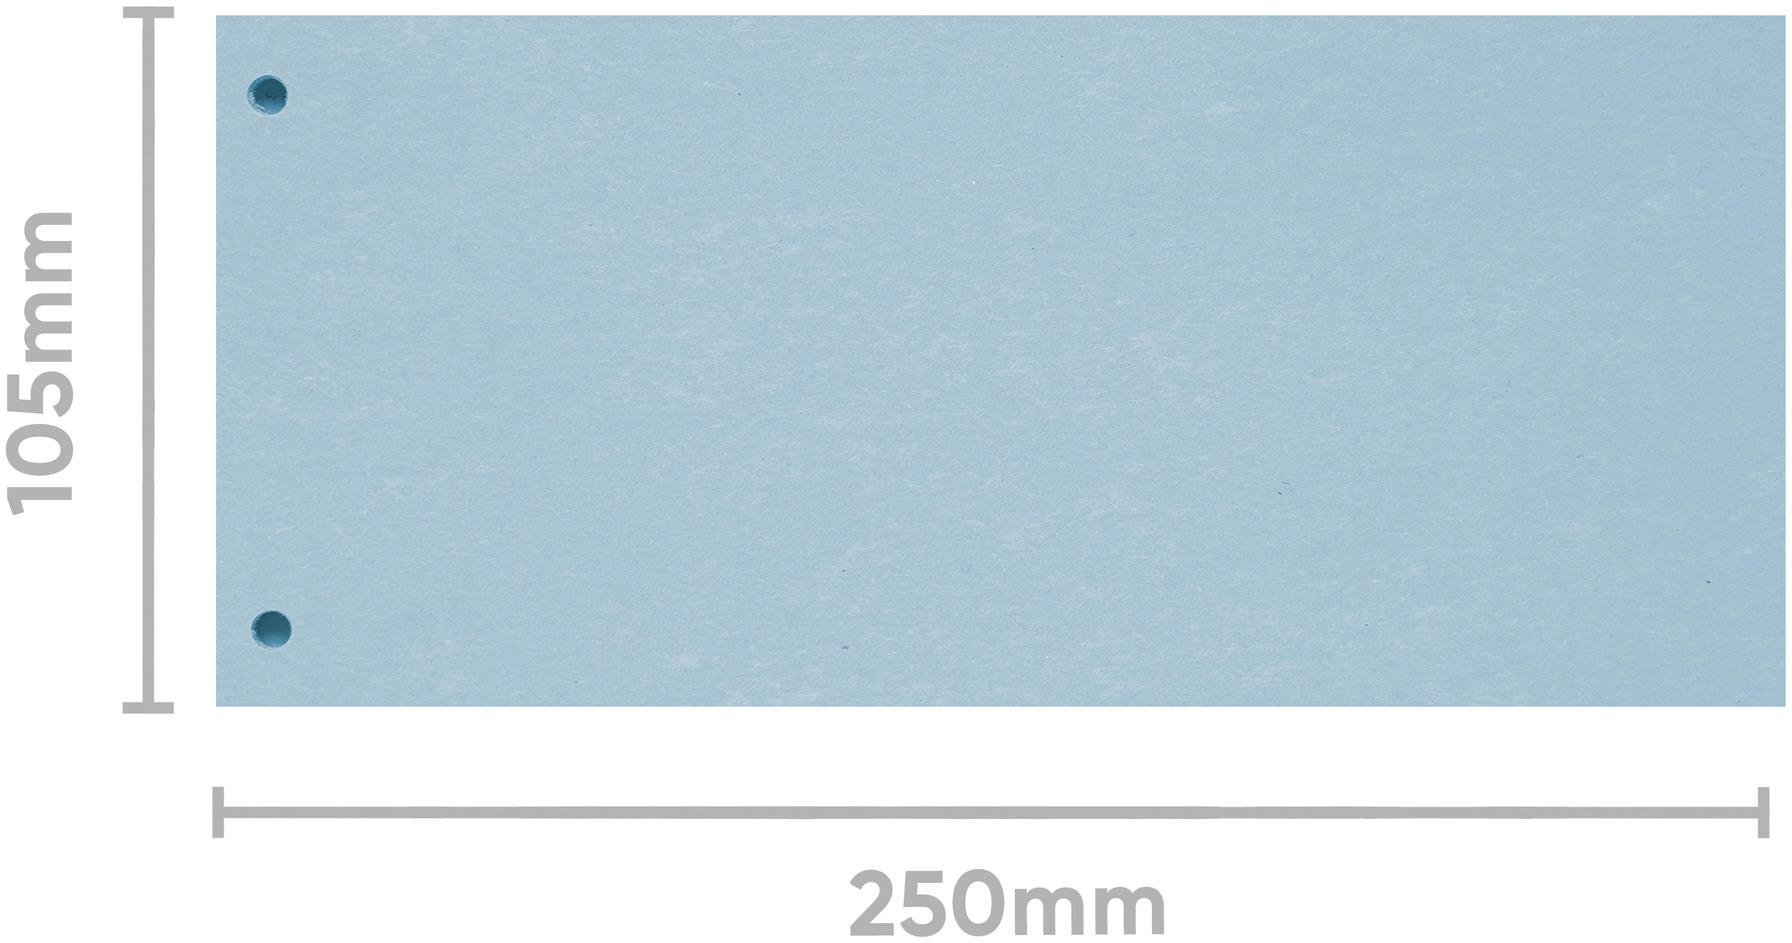 BIELLA Intercalaires carton 2 trous 19919005U bleu, 24x10.5cm 100 pcs.